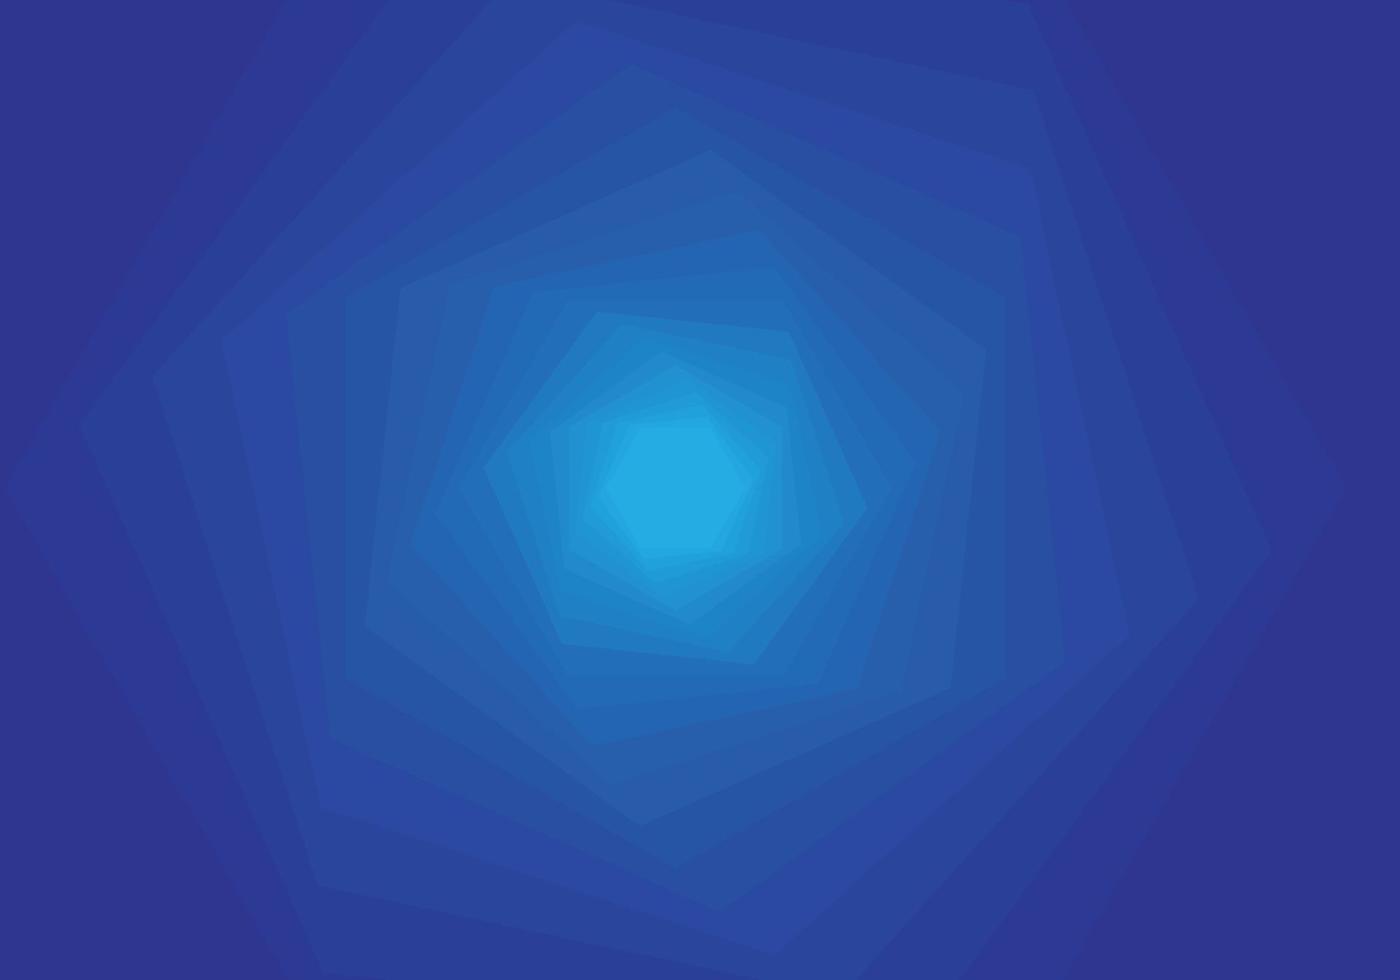 abstrakt bakgrund sammansatt av virvlande hexagoner i teknologisk stil lutning från ljus blå till mörk blå vektor